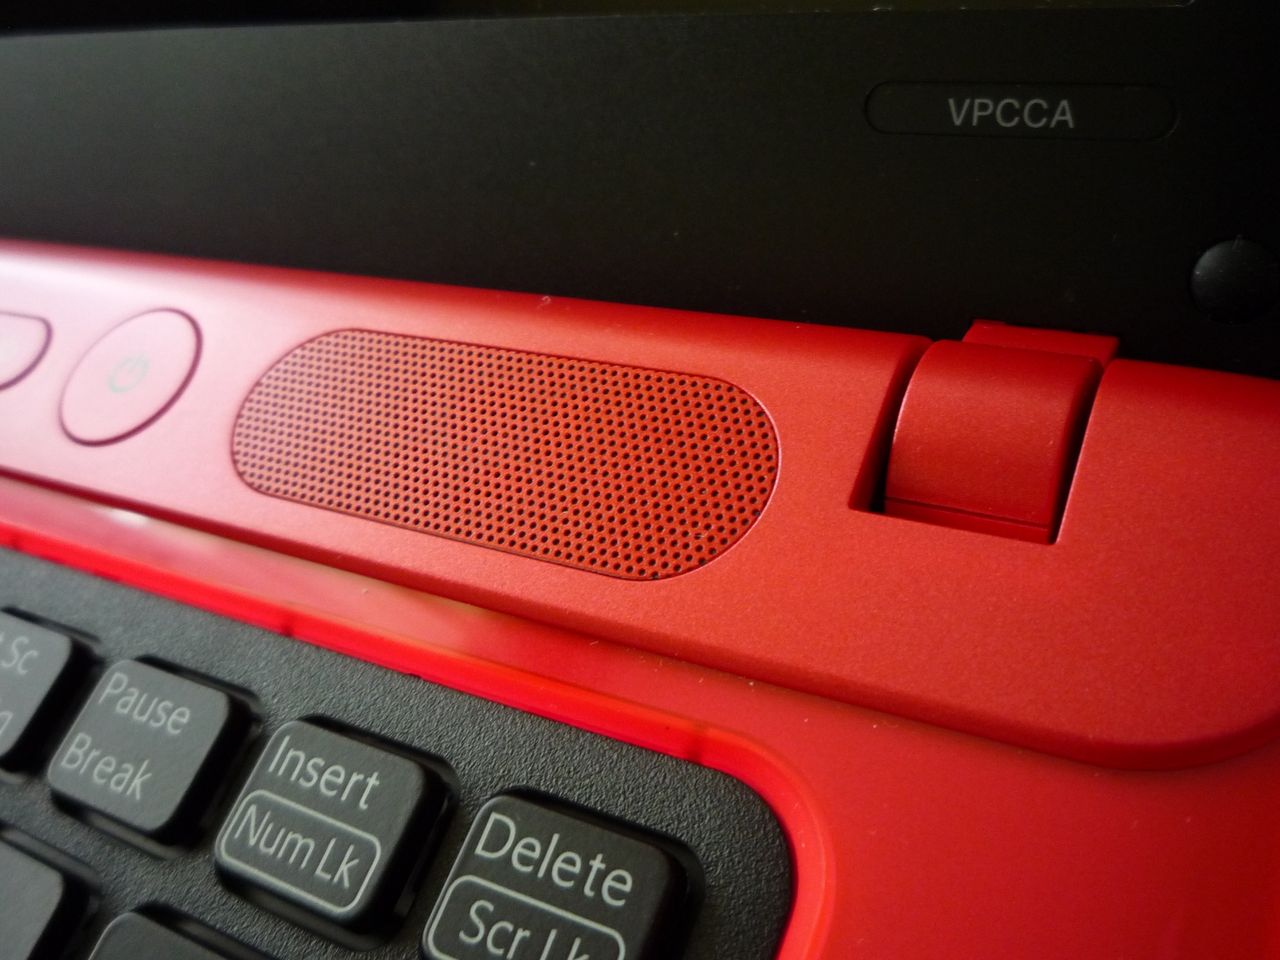 Sony VAIO CA - głośniki nie wyróżniają się jakościowo na tle konkurencji